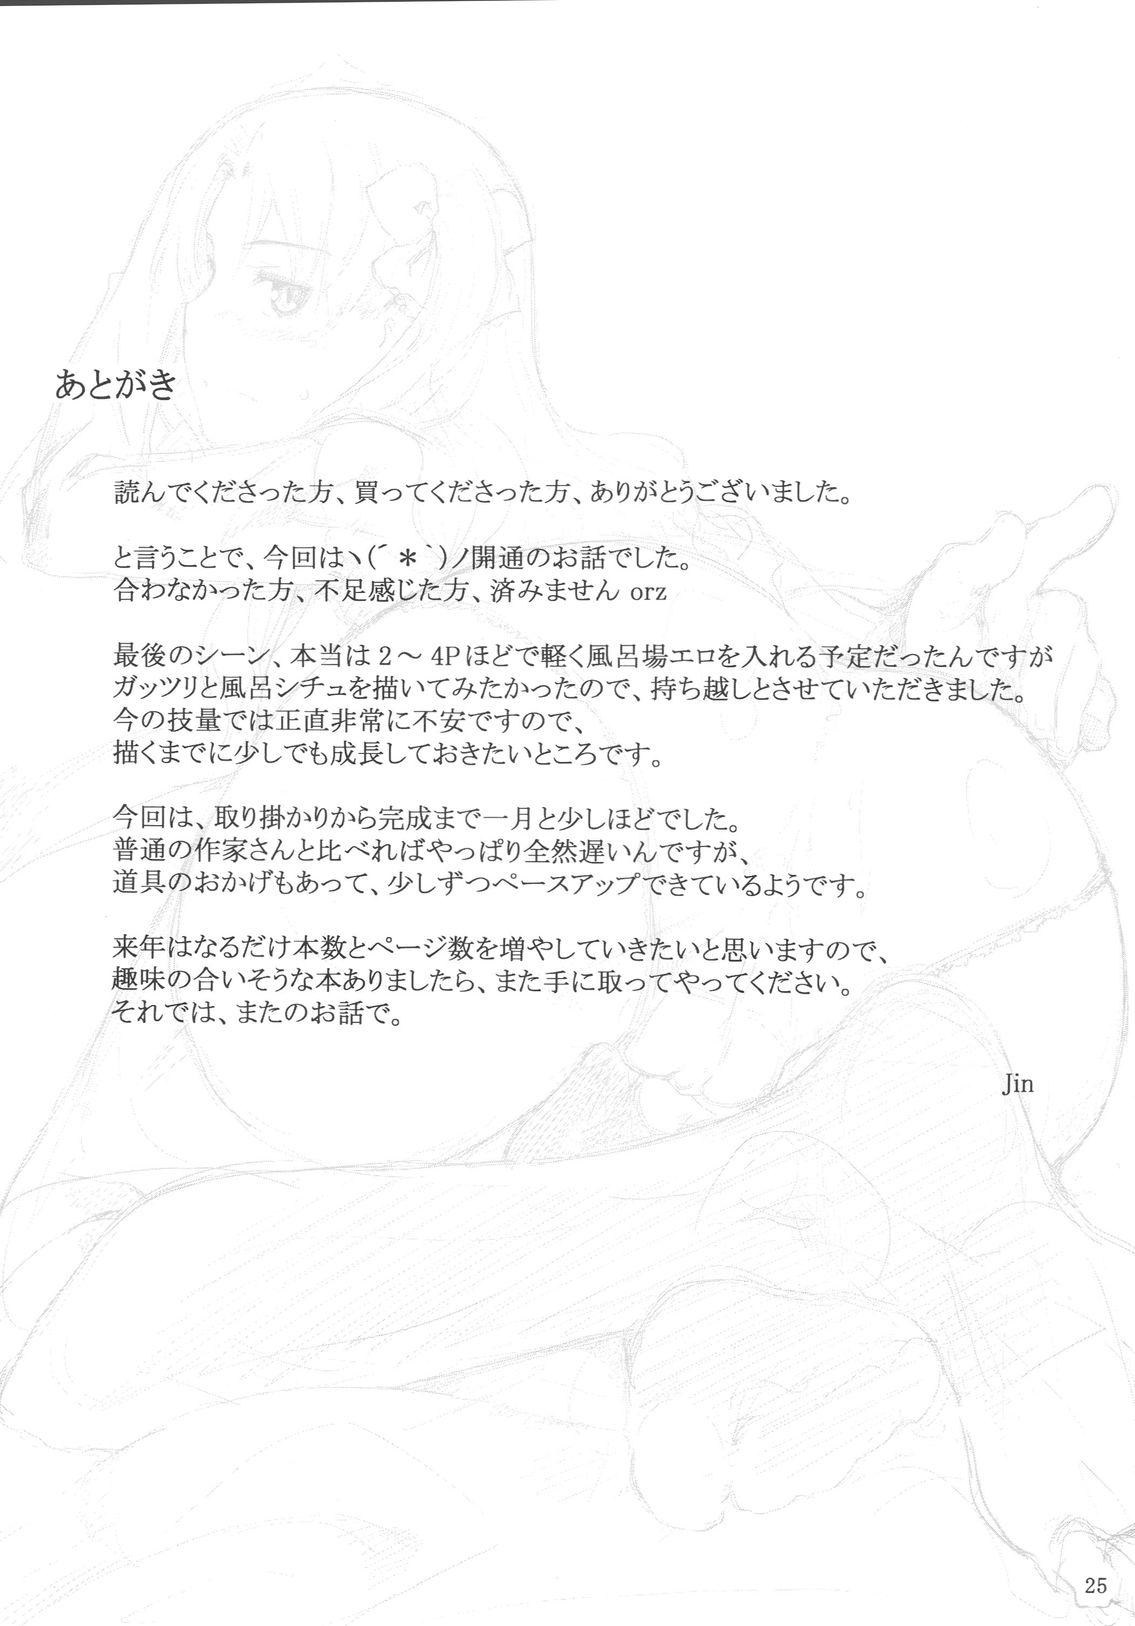 Gapes Gaping Asshole Tohsaka-ke no Kakei Jijou 5 - Fate stay night Muscle - Page 24